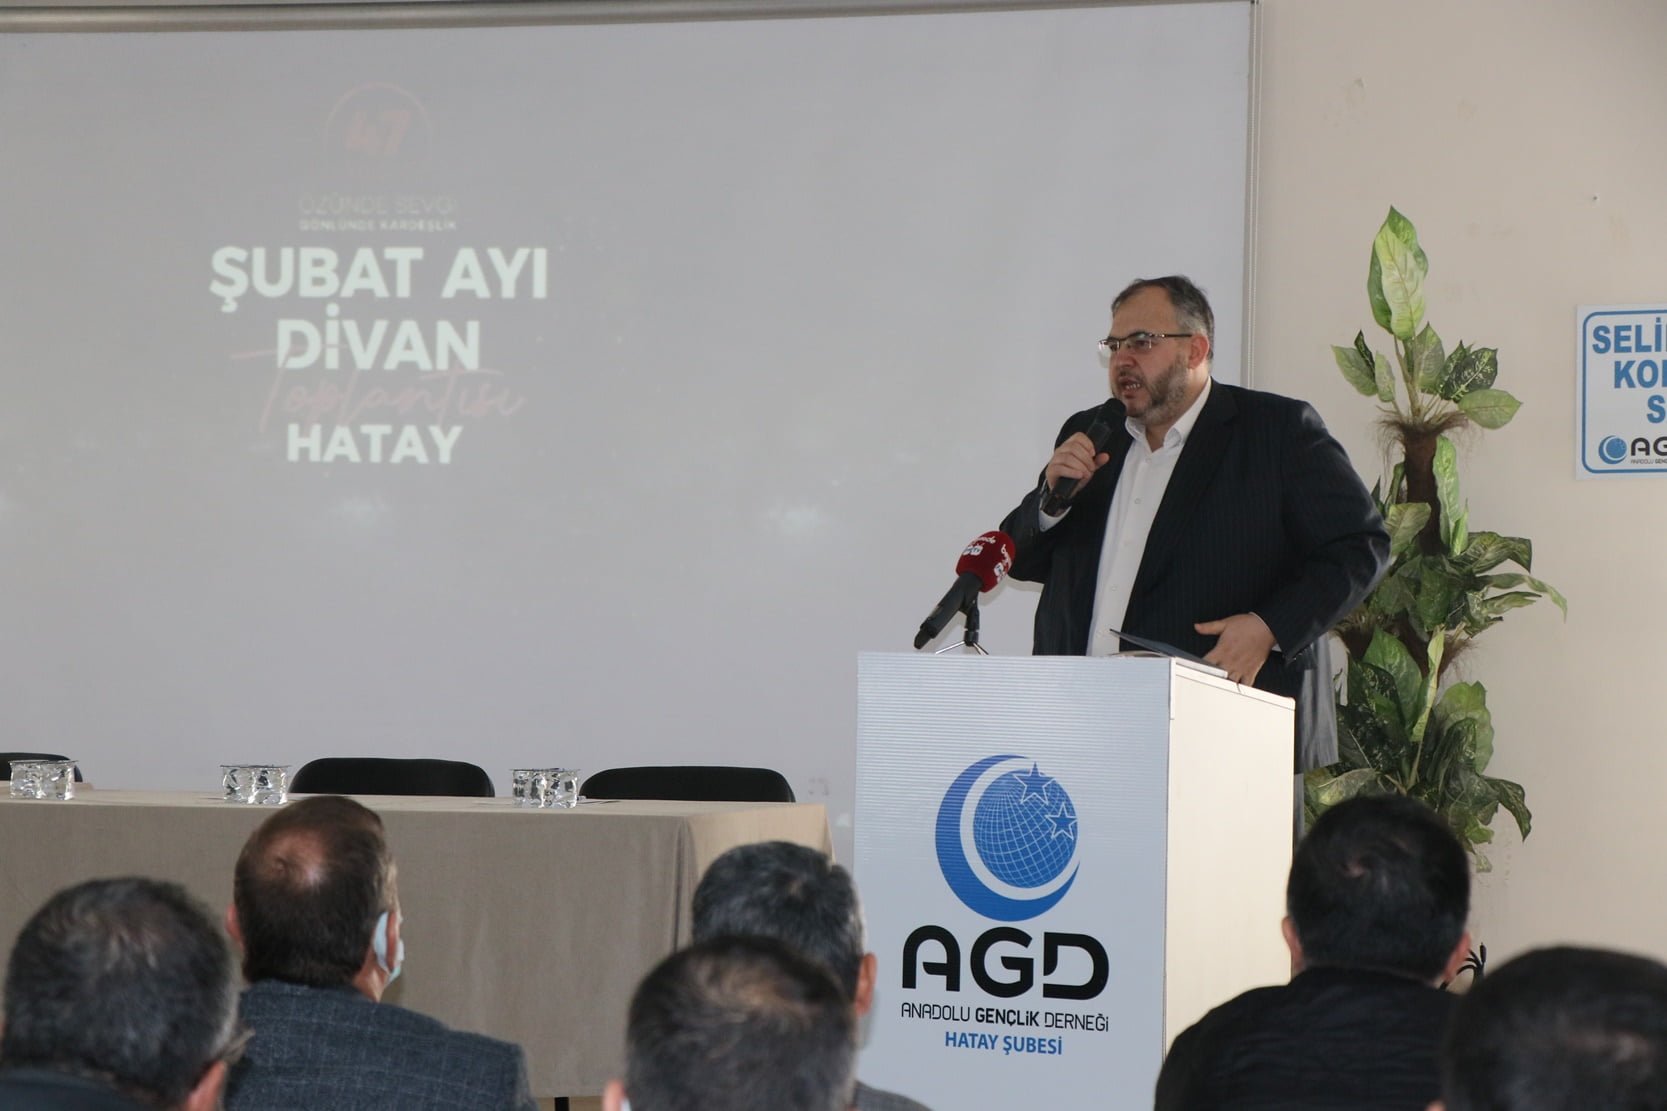 AGD Genel Başkanı Salih Turhan Hatay’da konuştu: İSRAİL’İ DEVLET OLARAK GÖRMÜYORUZ